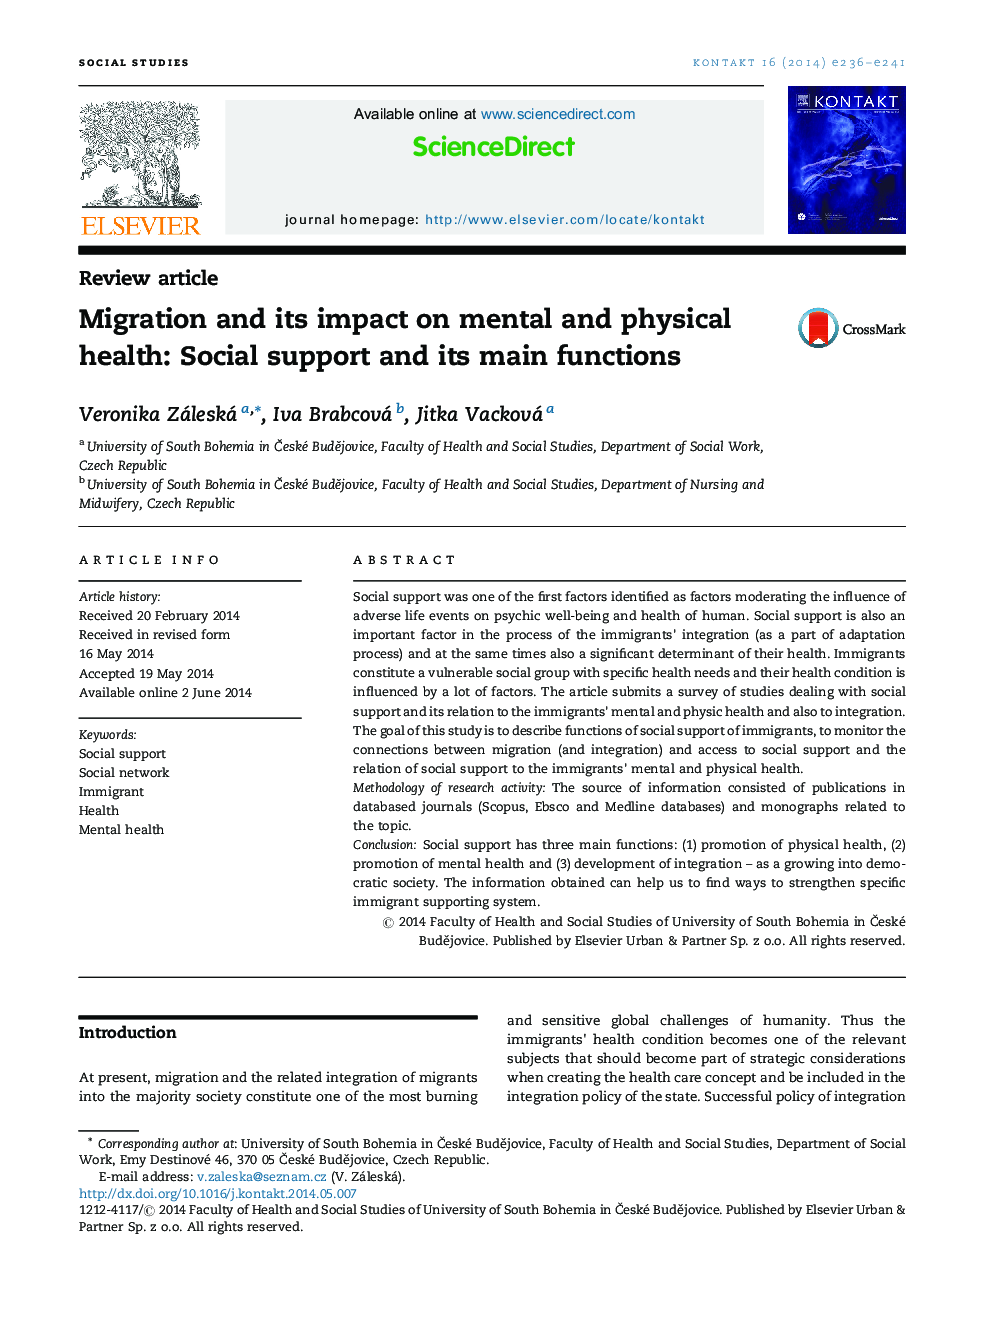 مهاجرت و تأثیر آن بر سلامت روحی و جسمی: حمایت اجتماعی و عملکرد اصلی آن